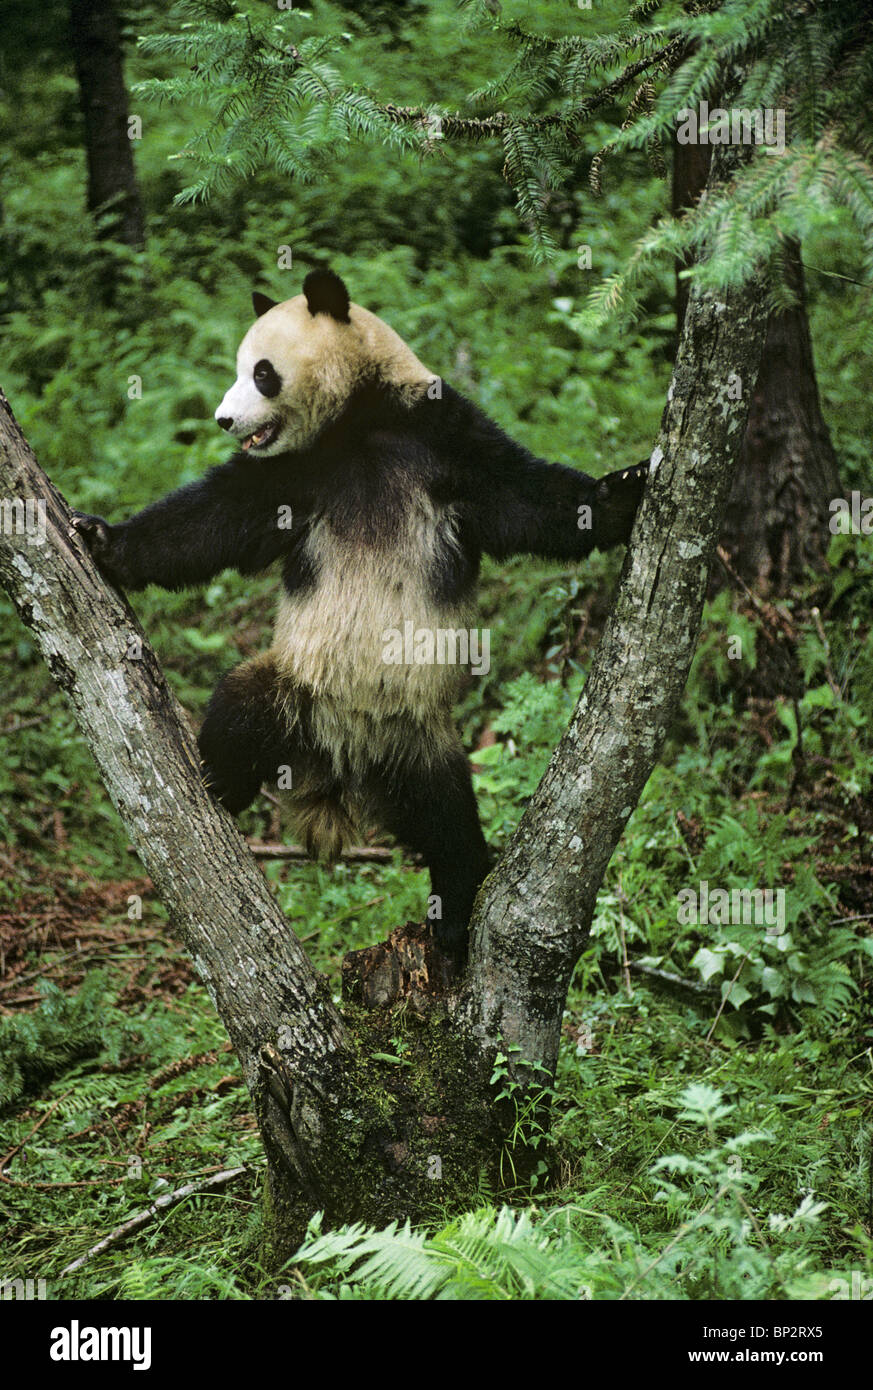 Panda gigante juega en la horquilla de árbol, Wolong, China, Junio Foto de stock